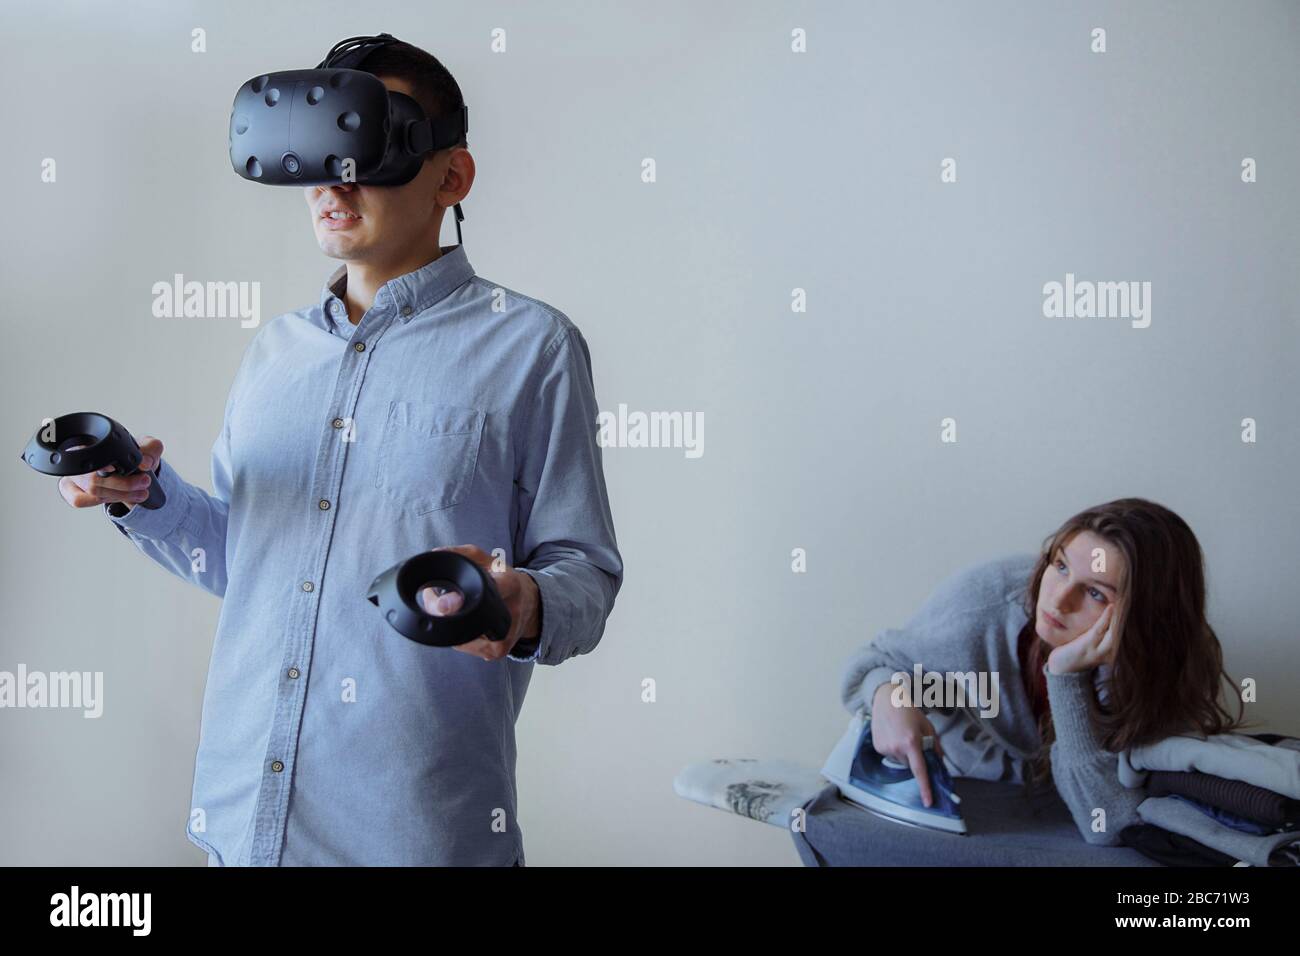 Un uomo con entusiasmo gioca ai videogiochi in realtà virtuale. La moglie sta facendo i lavori domestici in questo momento. Foto di alta qualità Foto Stock